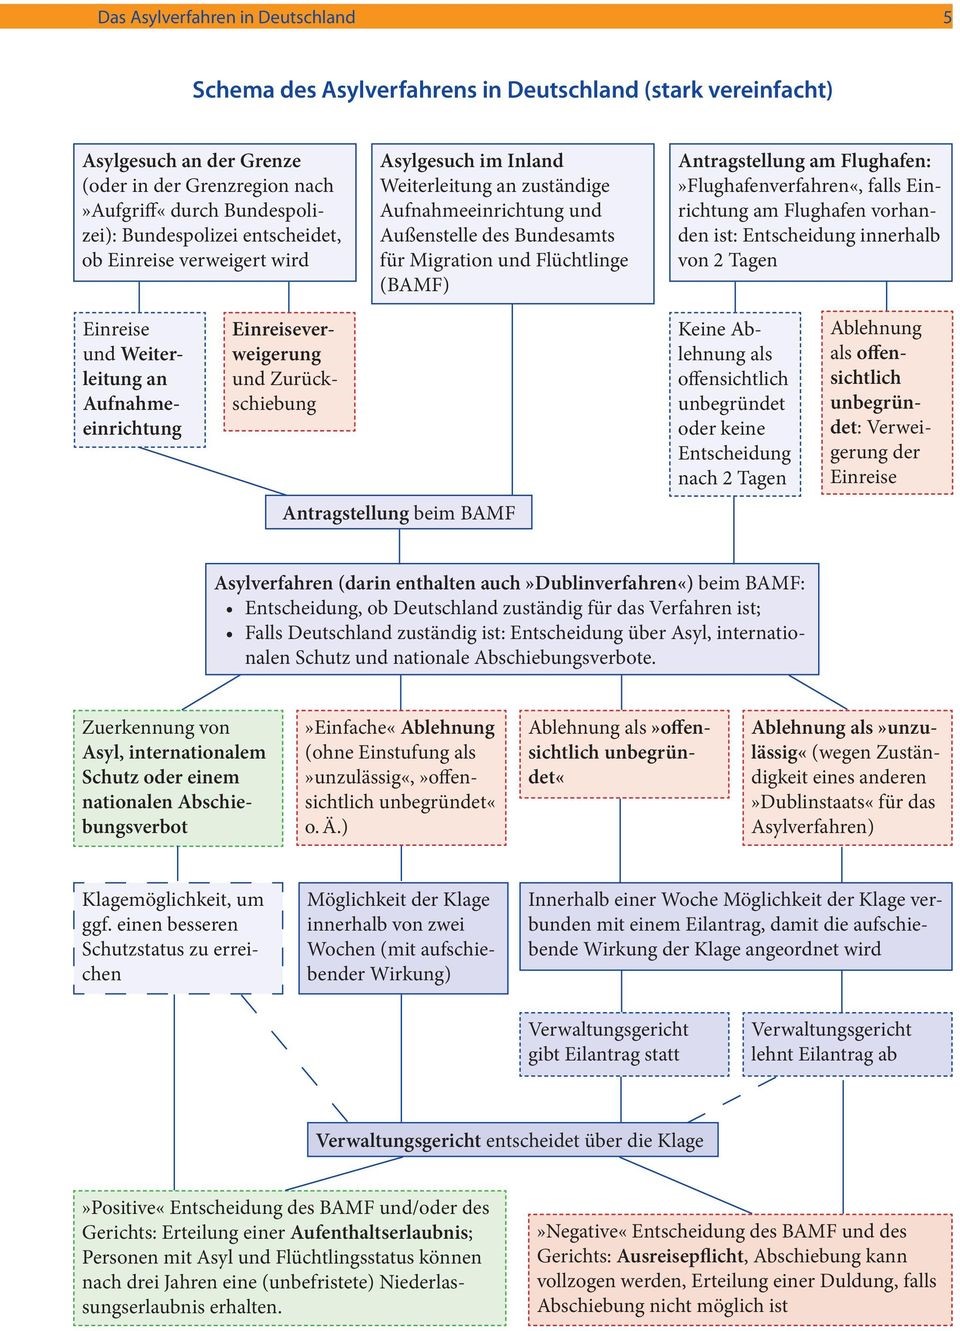  Schema des Asylverfahrens in Deutschland (stark vereinfacht); Quelle: Asylmagazin-Basisinfo-1-Asylverfahren 